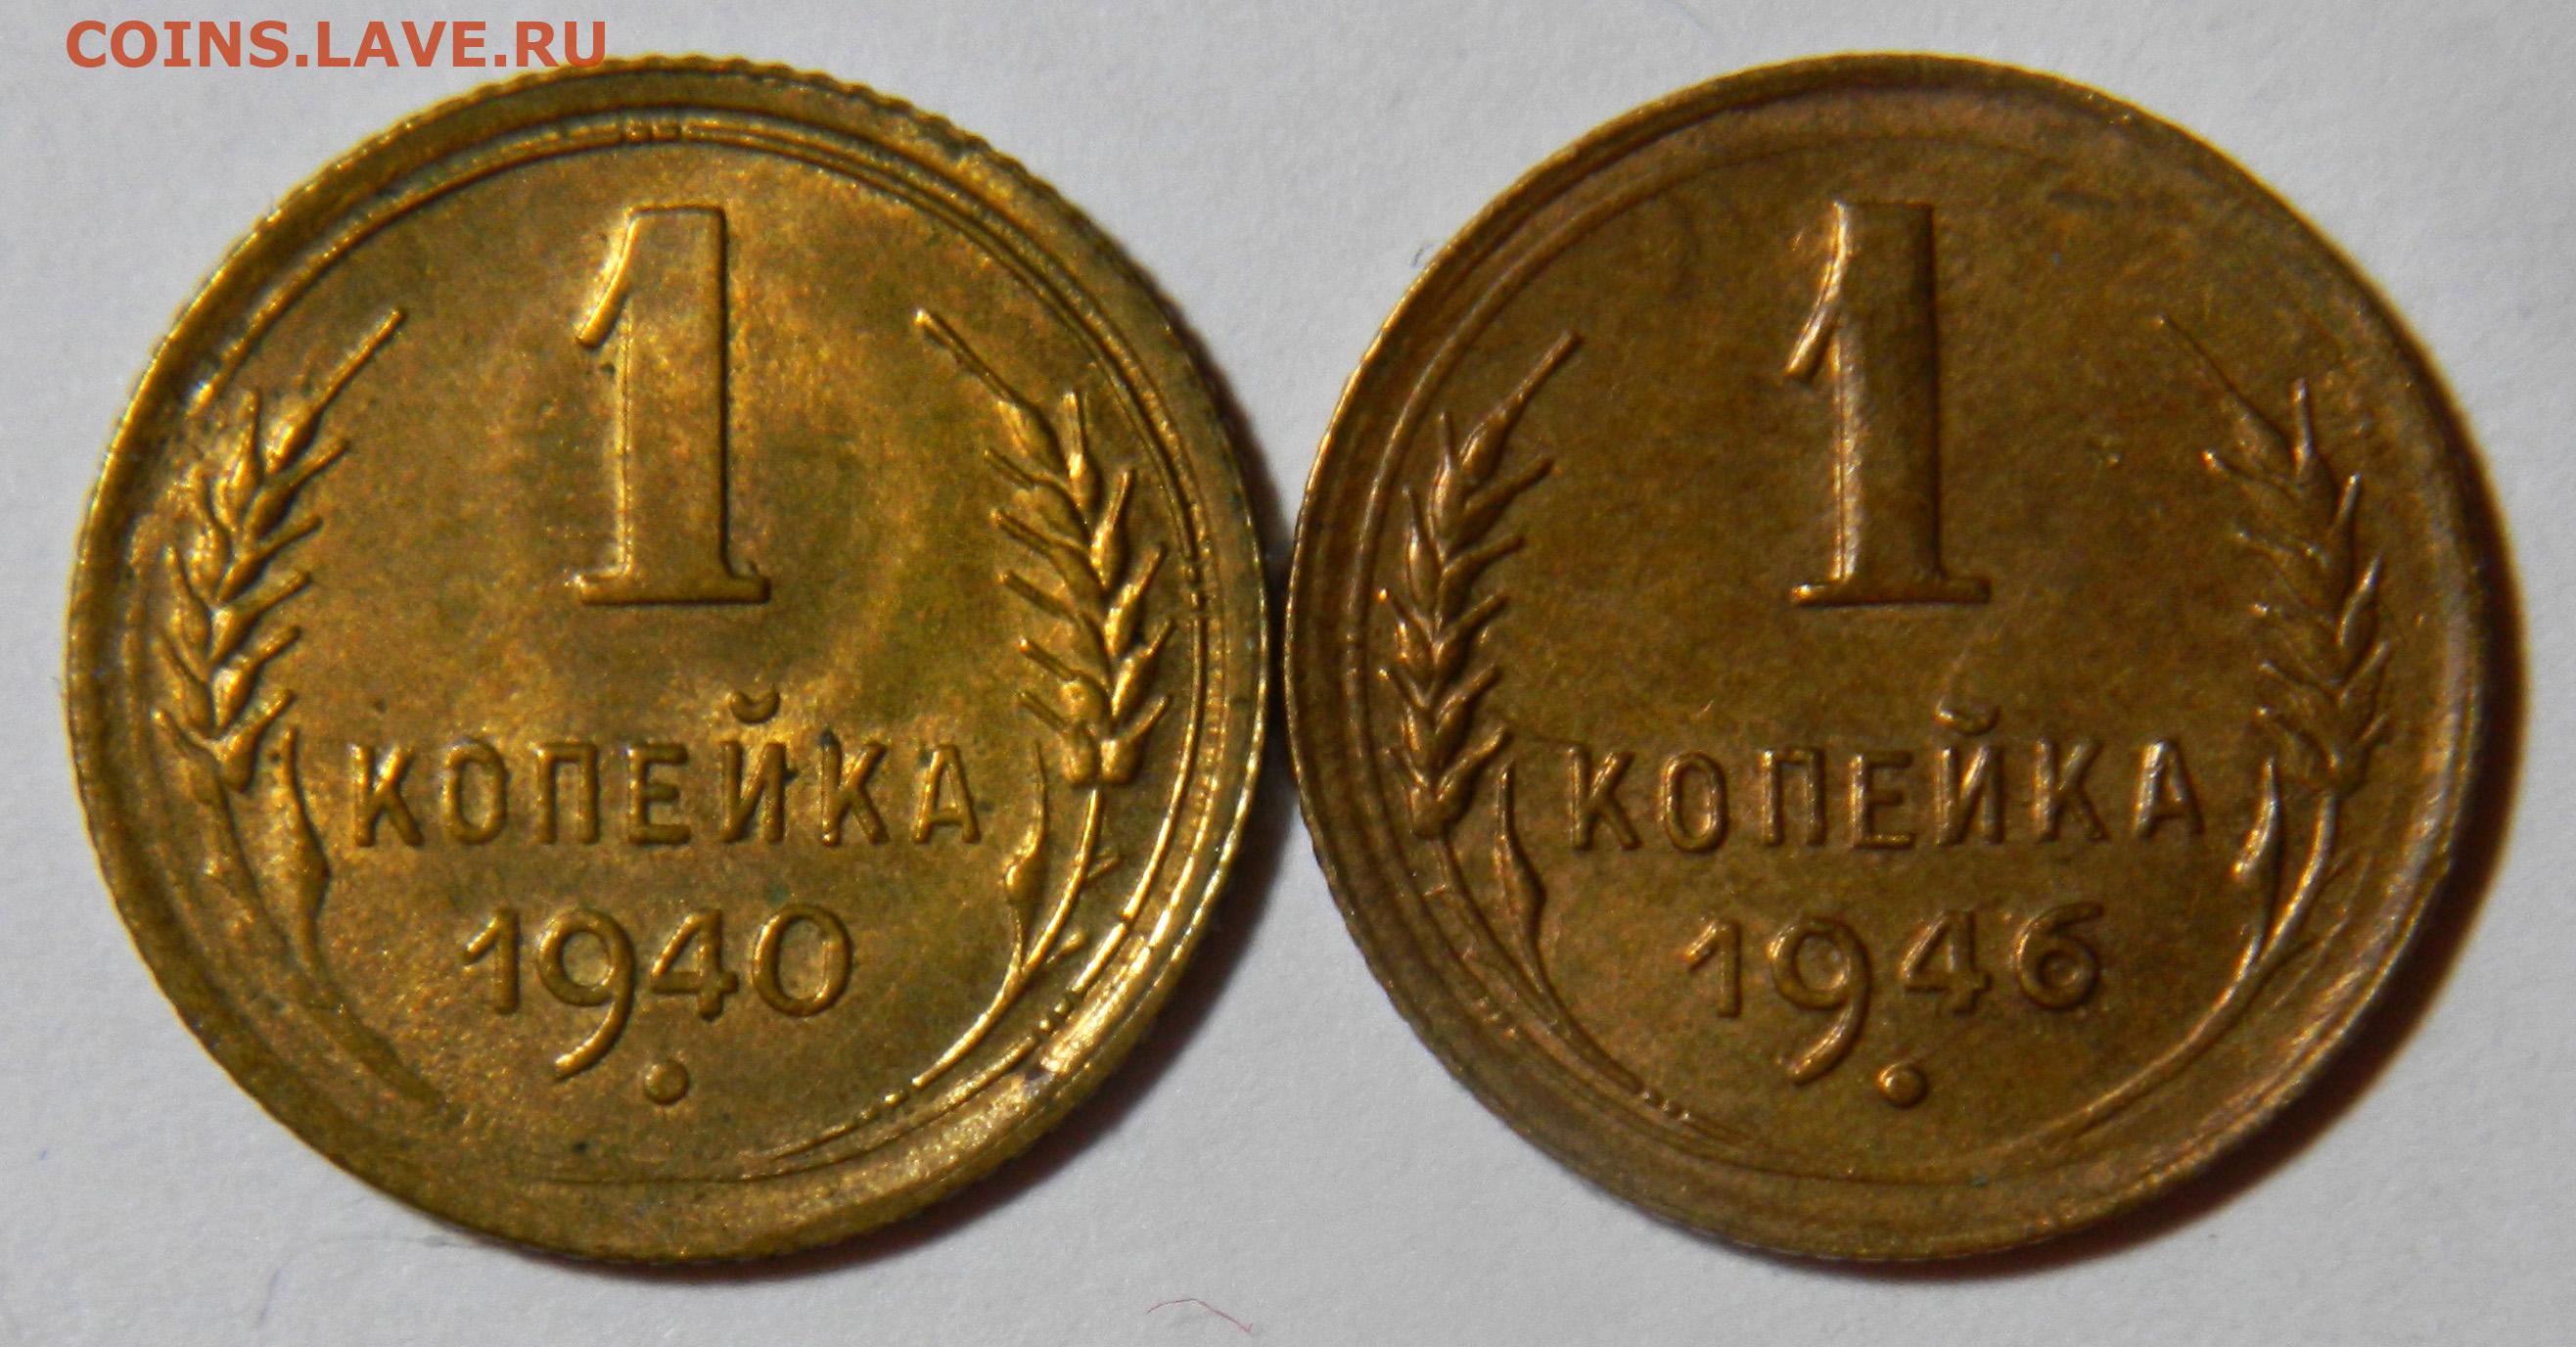 Северодвинск до 1957 года 9 букв. Тринадцать монет. Монета 1926 года с молотком. Монет вс 0.7. Надпись до 1957.